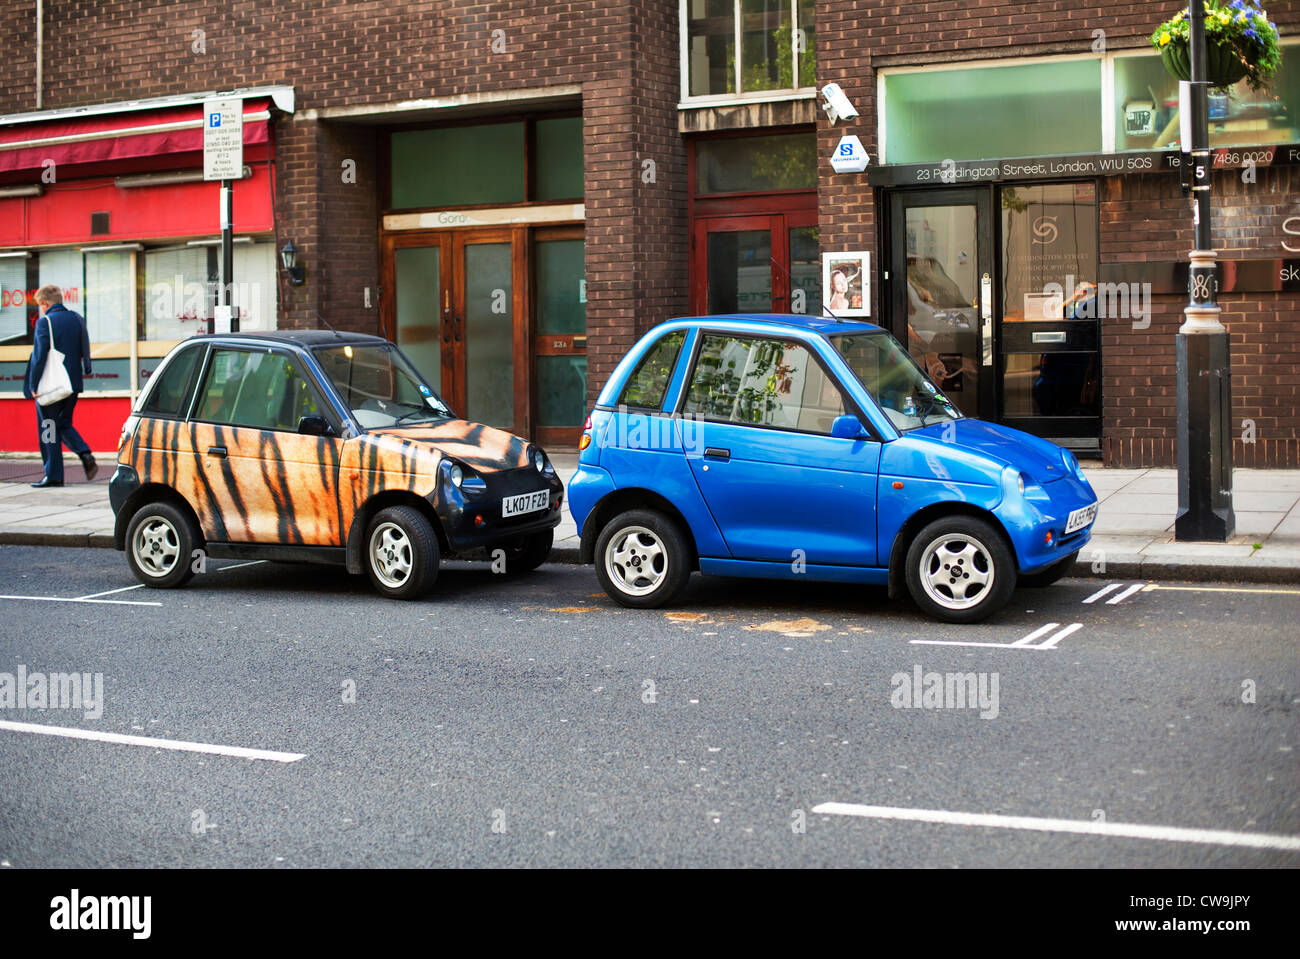 Deux des voitures écologiques partager une place de parking, Londres, Angleterre, Royaume-Uni, Europe Banque D'Images